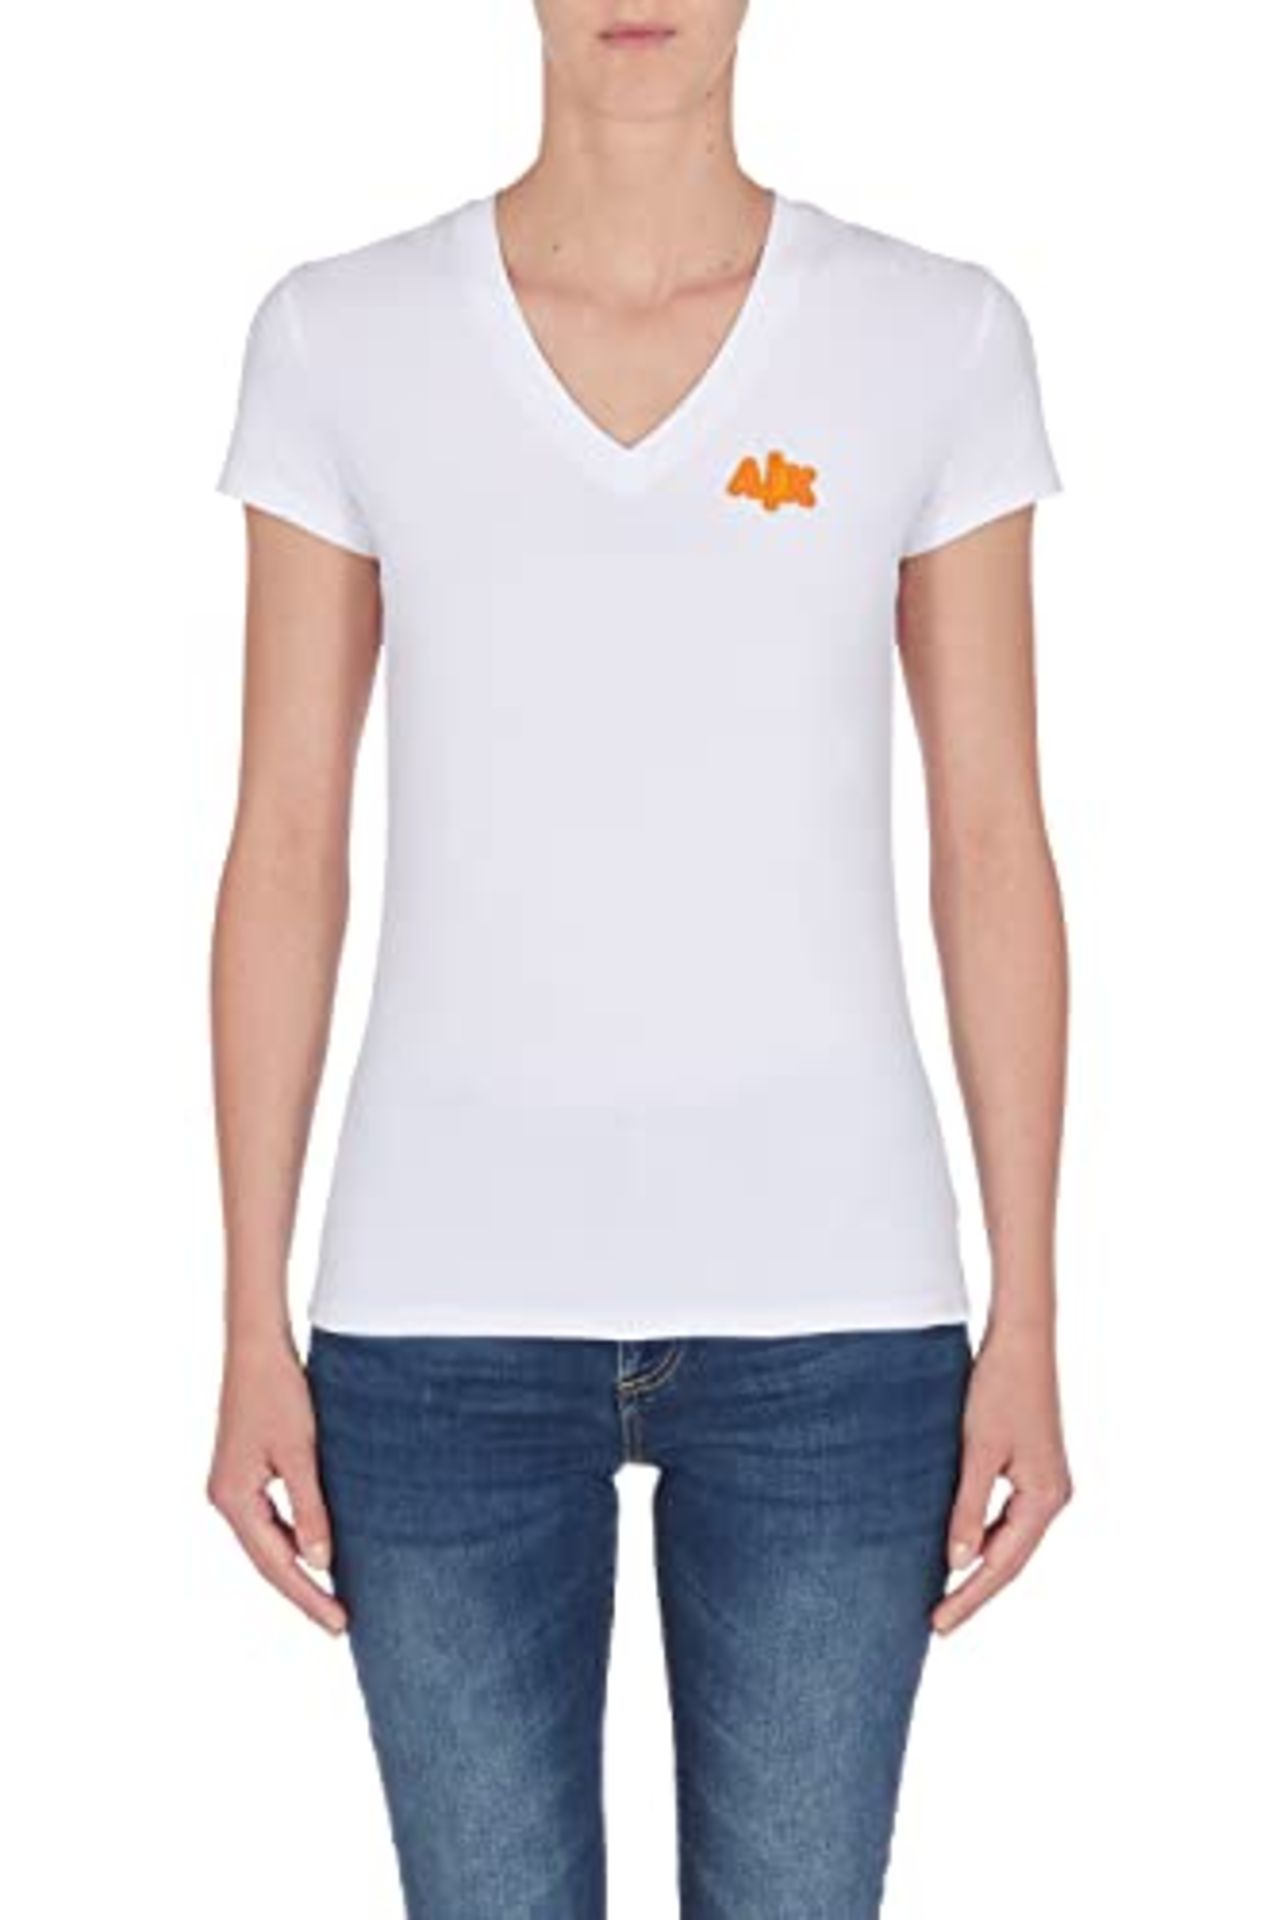 Armani Exchange Women's V-Neck Small Chest Logo T-Shirt, White